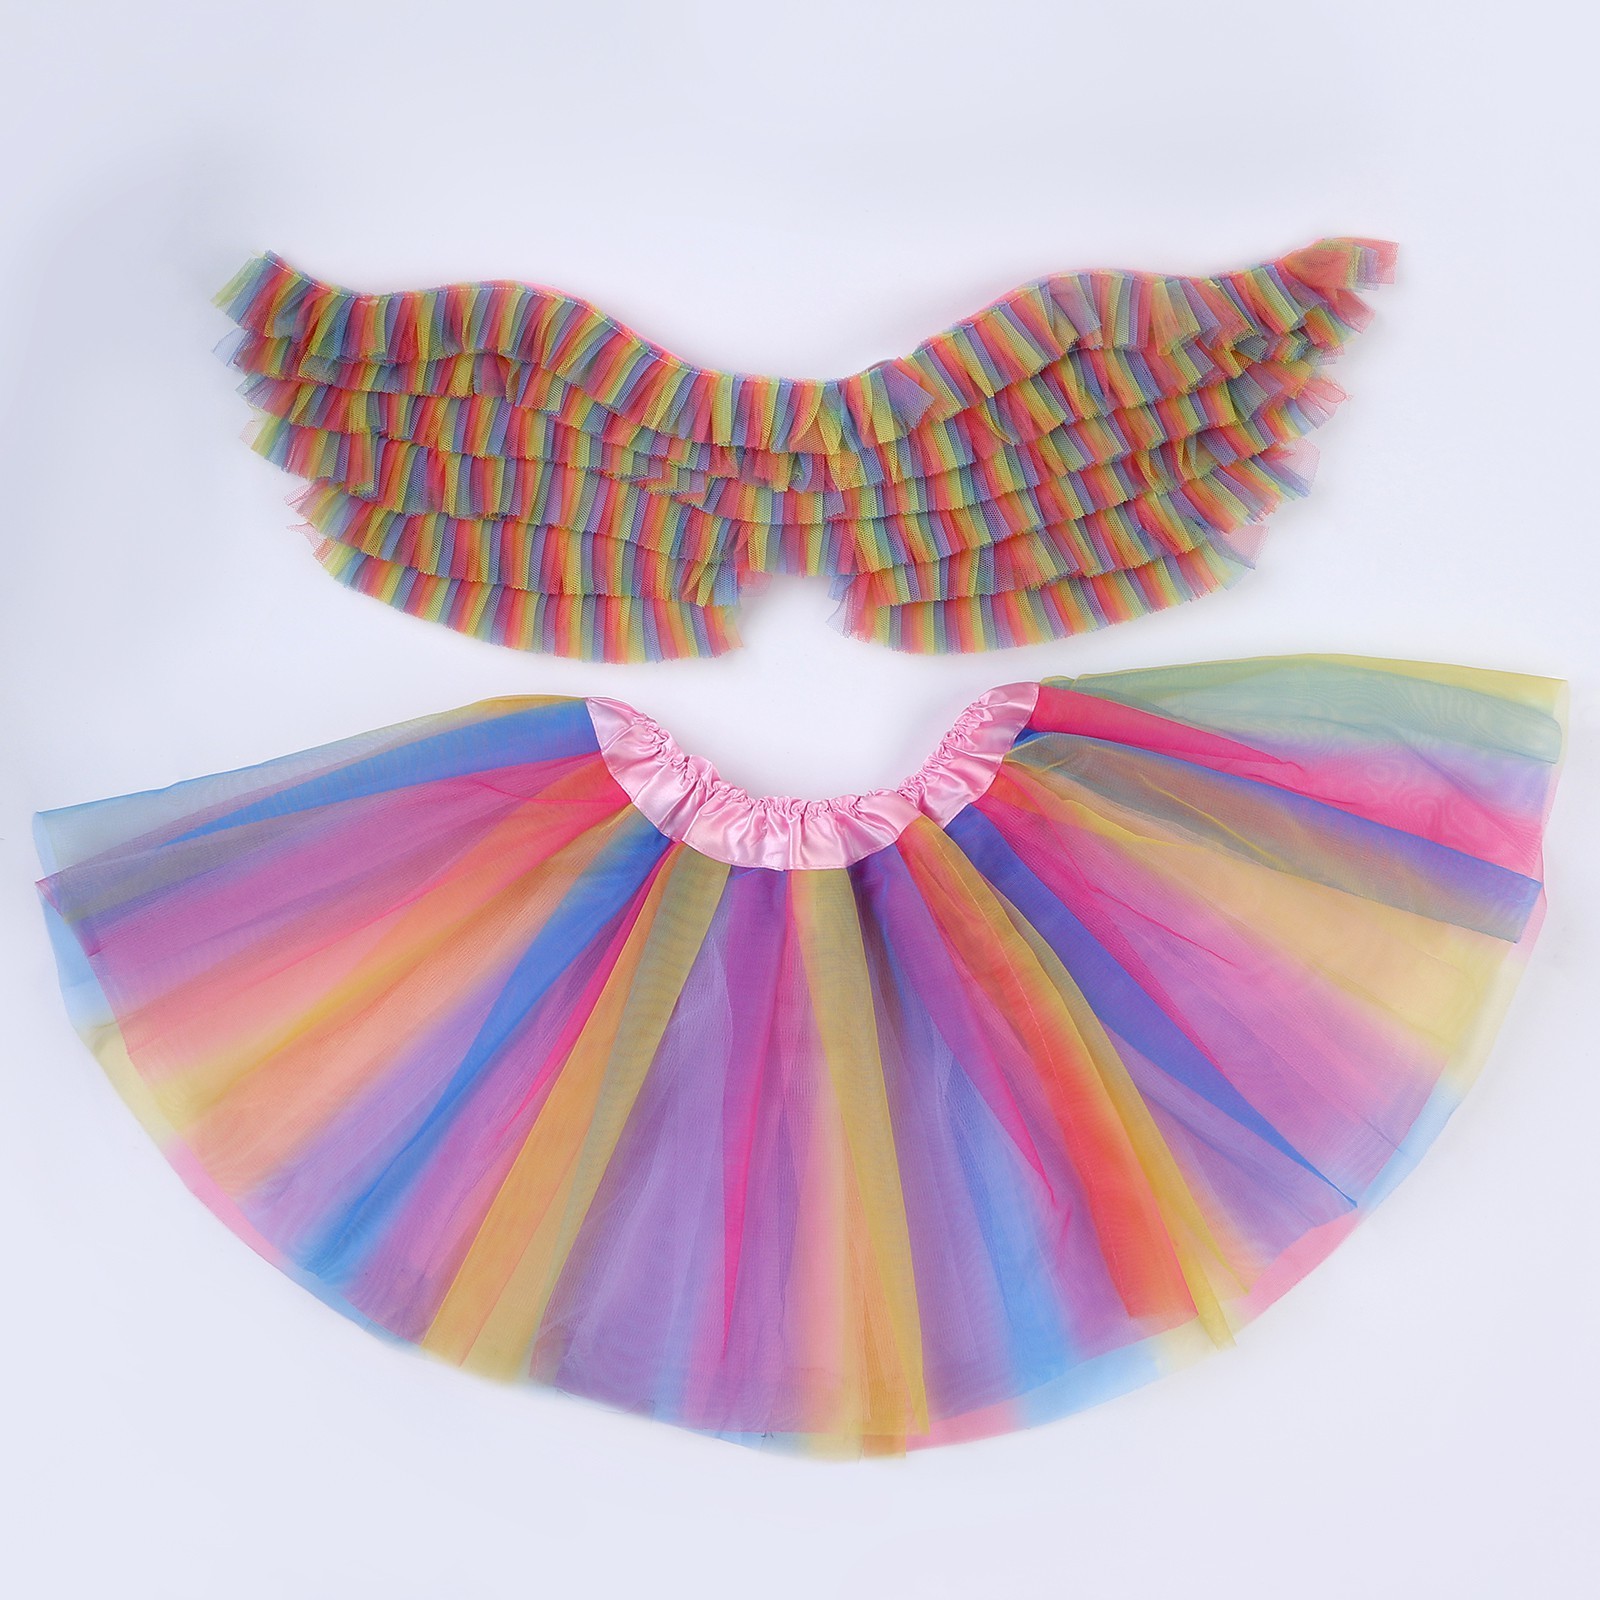 Карнавальный набор Красотка, 5-7 лет: юбка сх/б подкладом, крылья